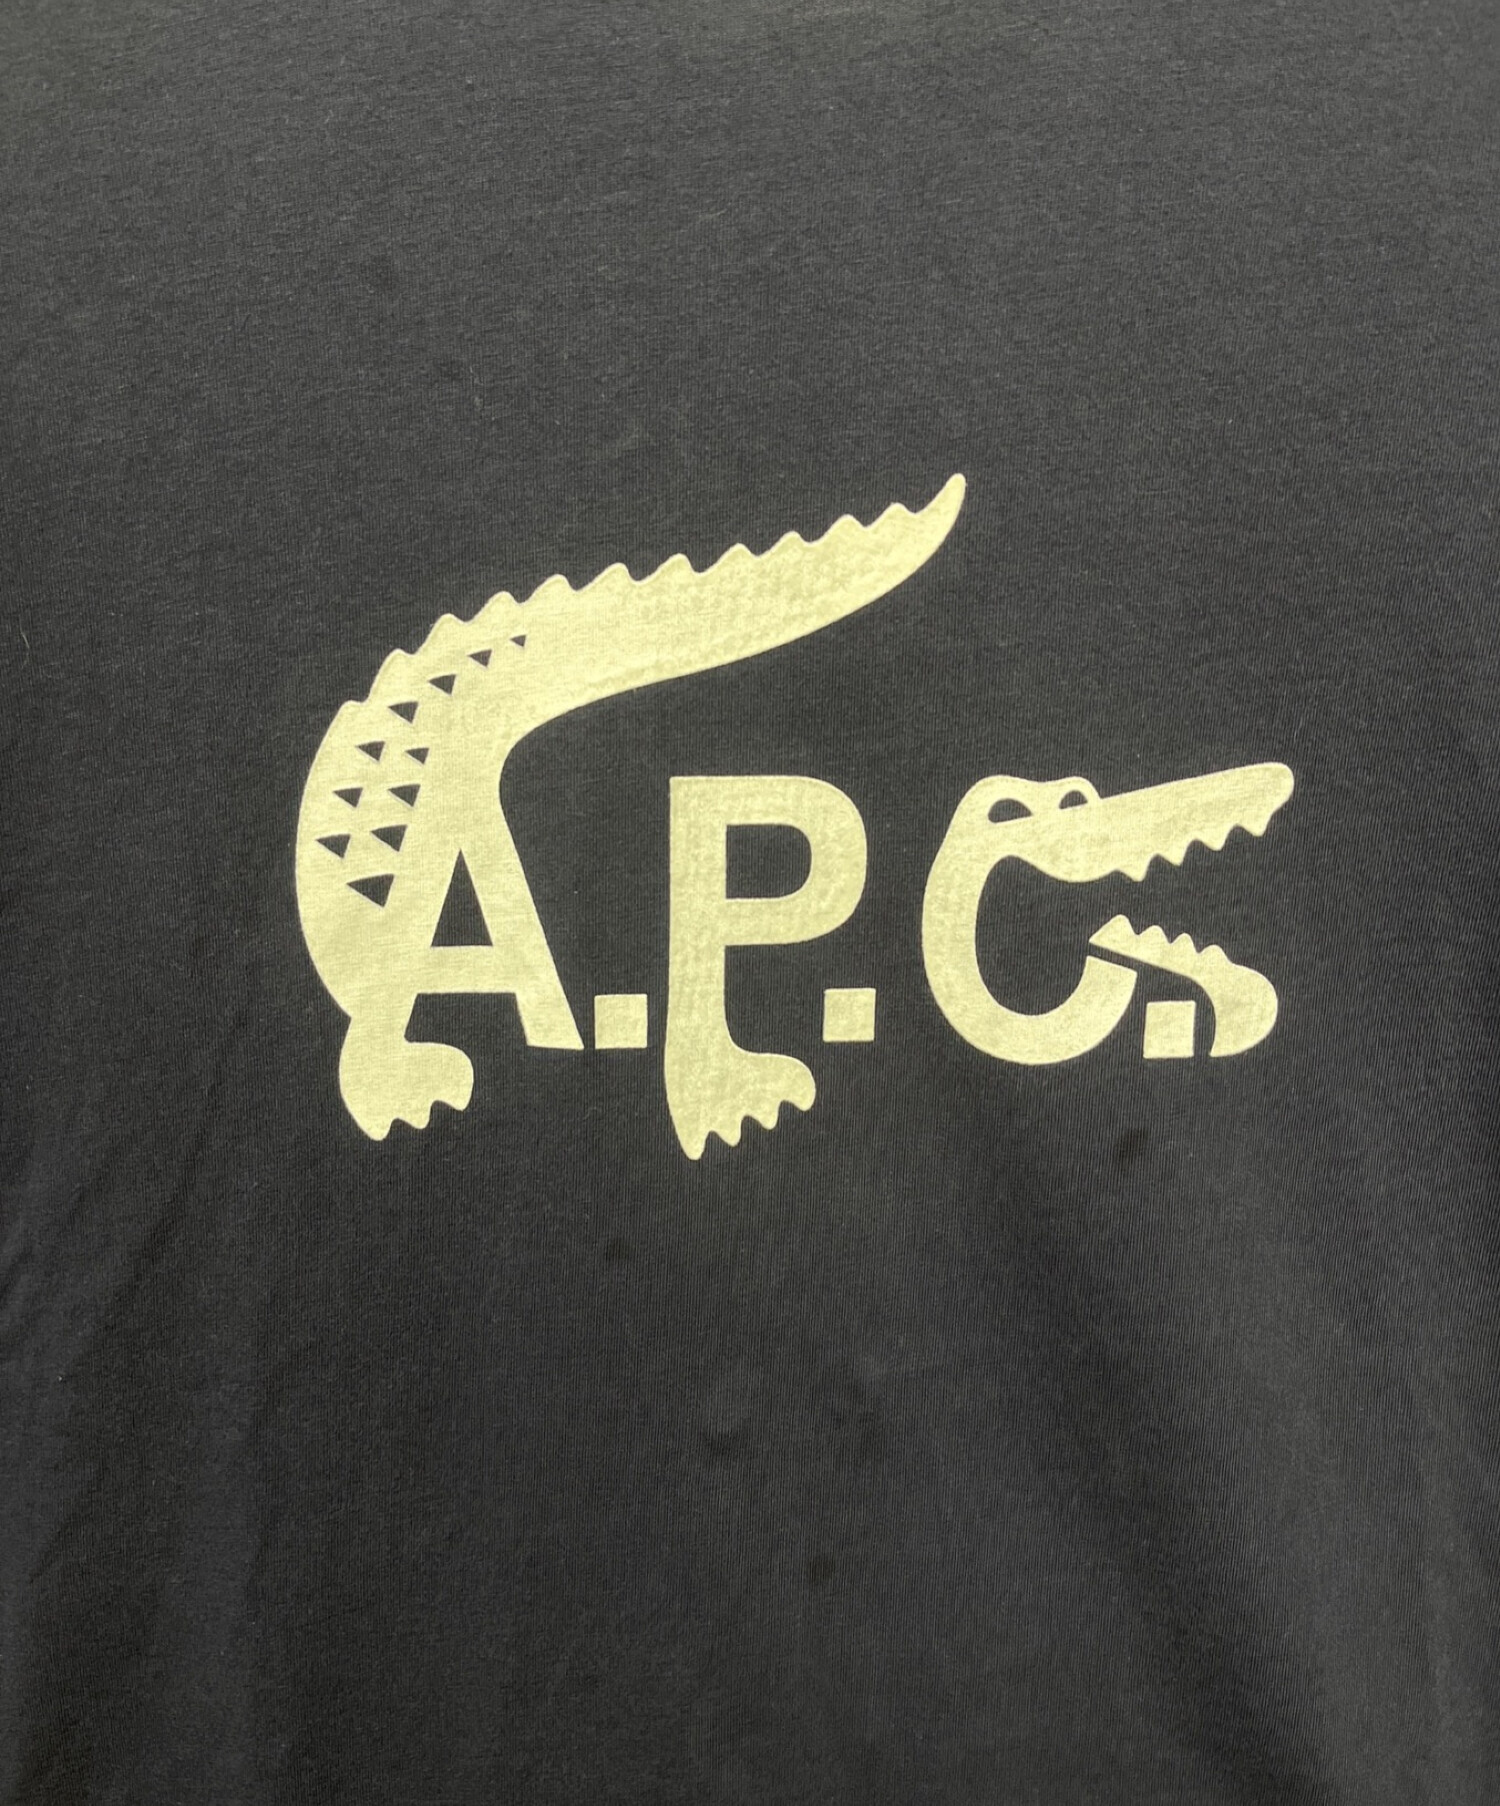 A.P.C×LACOSTE (アーペーセー × ラコステ) プリントTシャツ ネイビー サイズ:XL